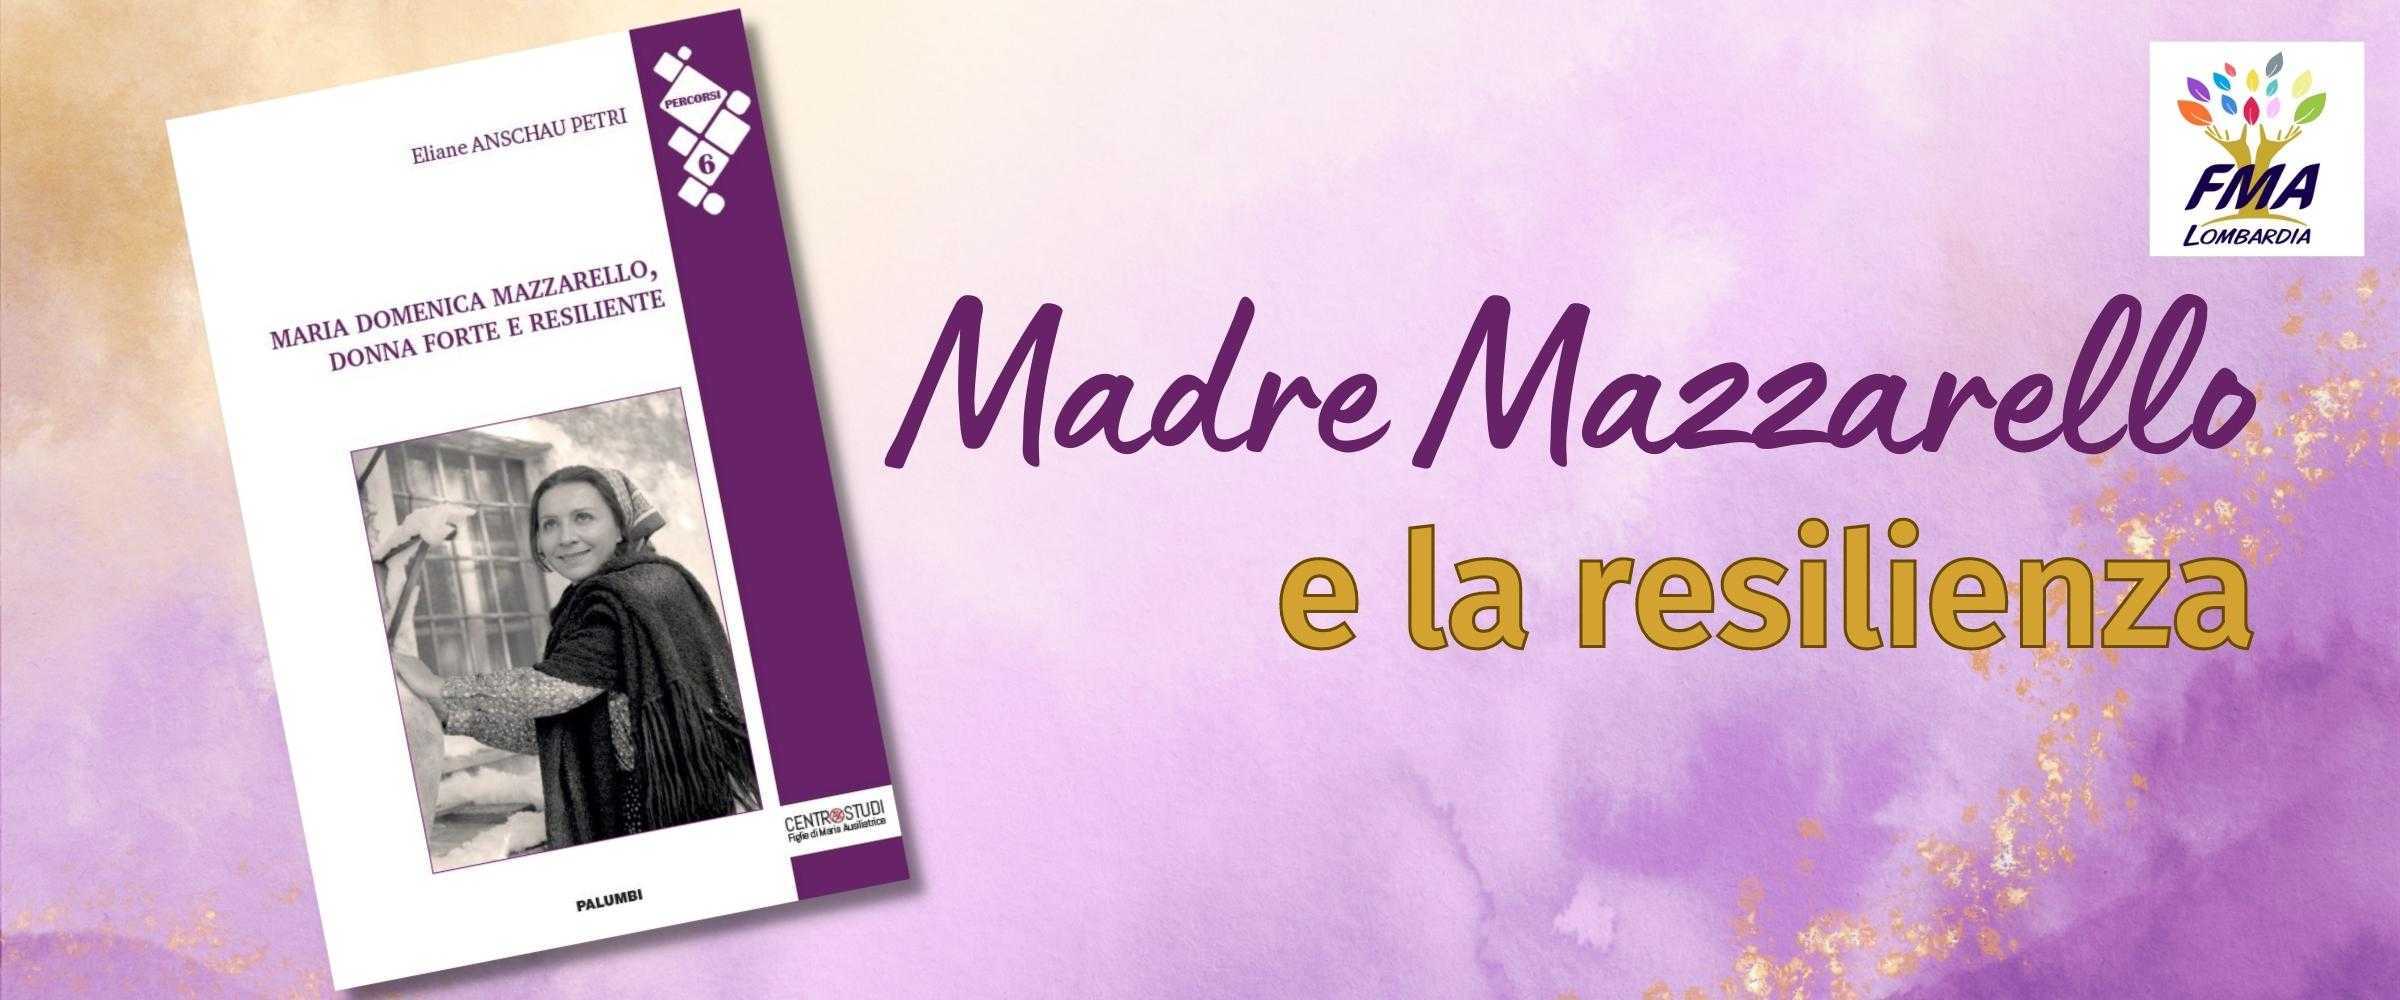 Maria Domenica Mazzarello, donna forte e resiliente